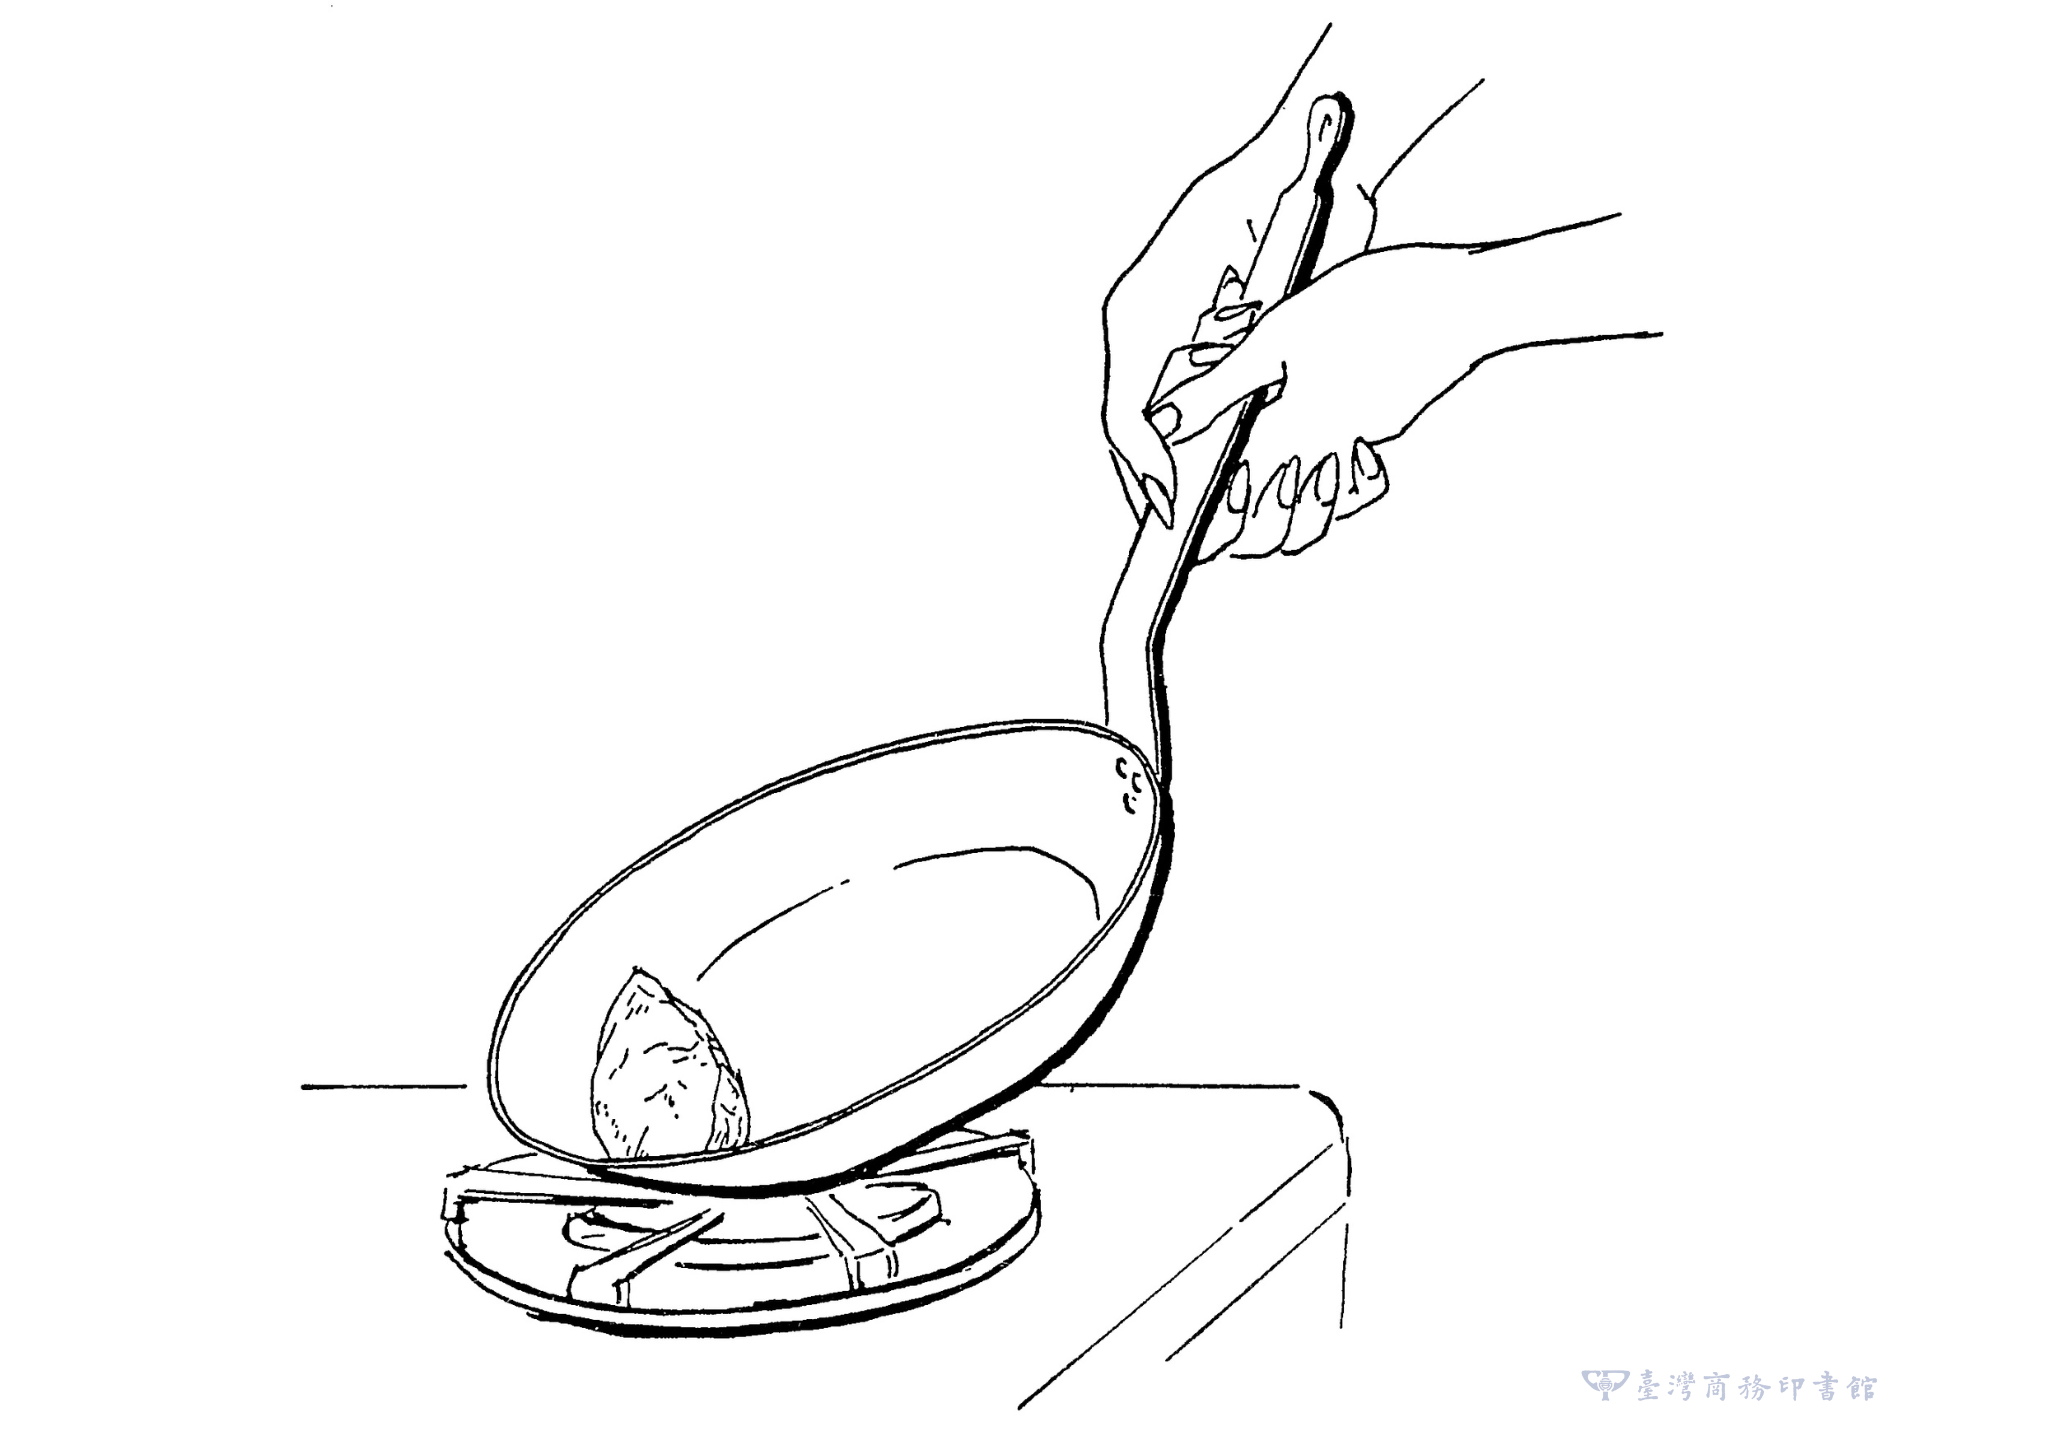 圖10：一旦歐姆蛋成形，便讓它保持在鍋底與鍋側之間的角落，讓歐姆蛋底部煎出漂亮的淺金色。（圖片來源：臺灣商務提供）